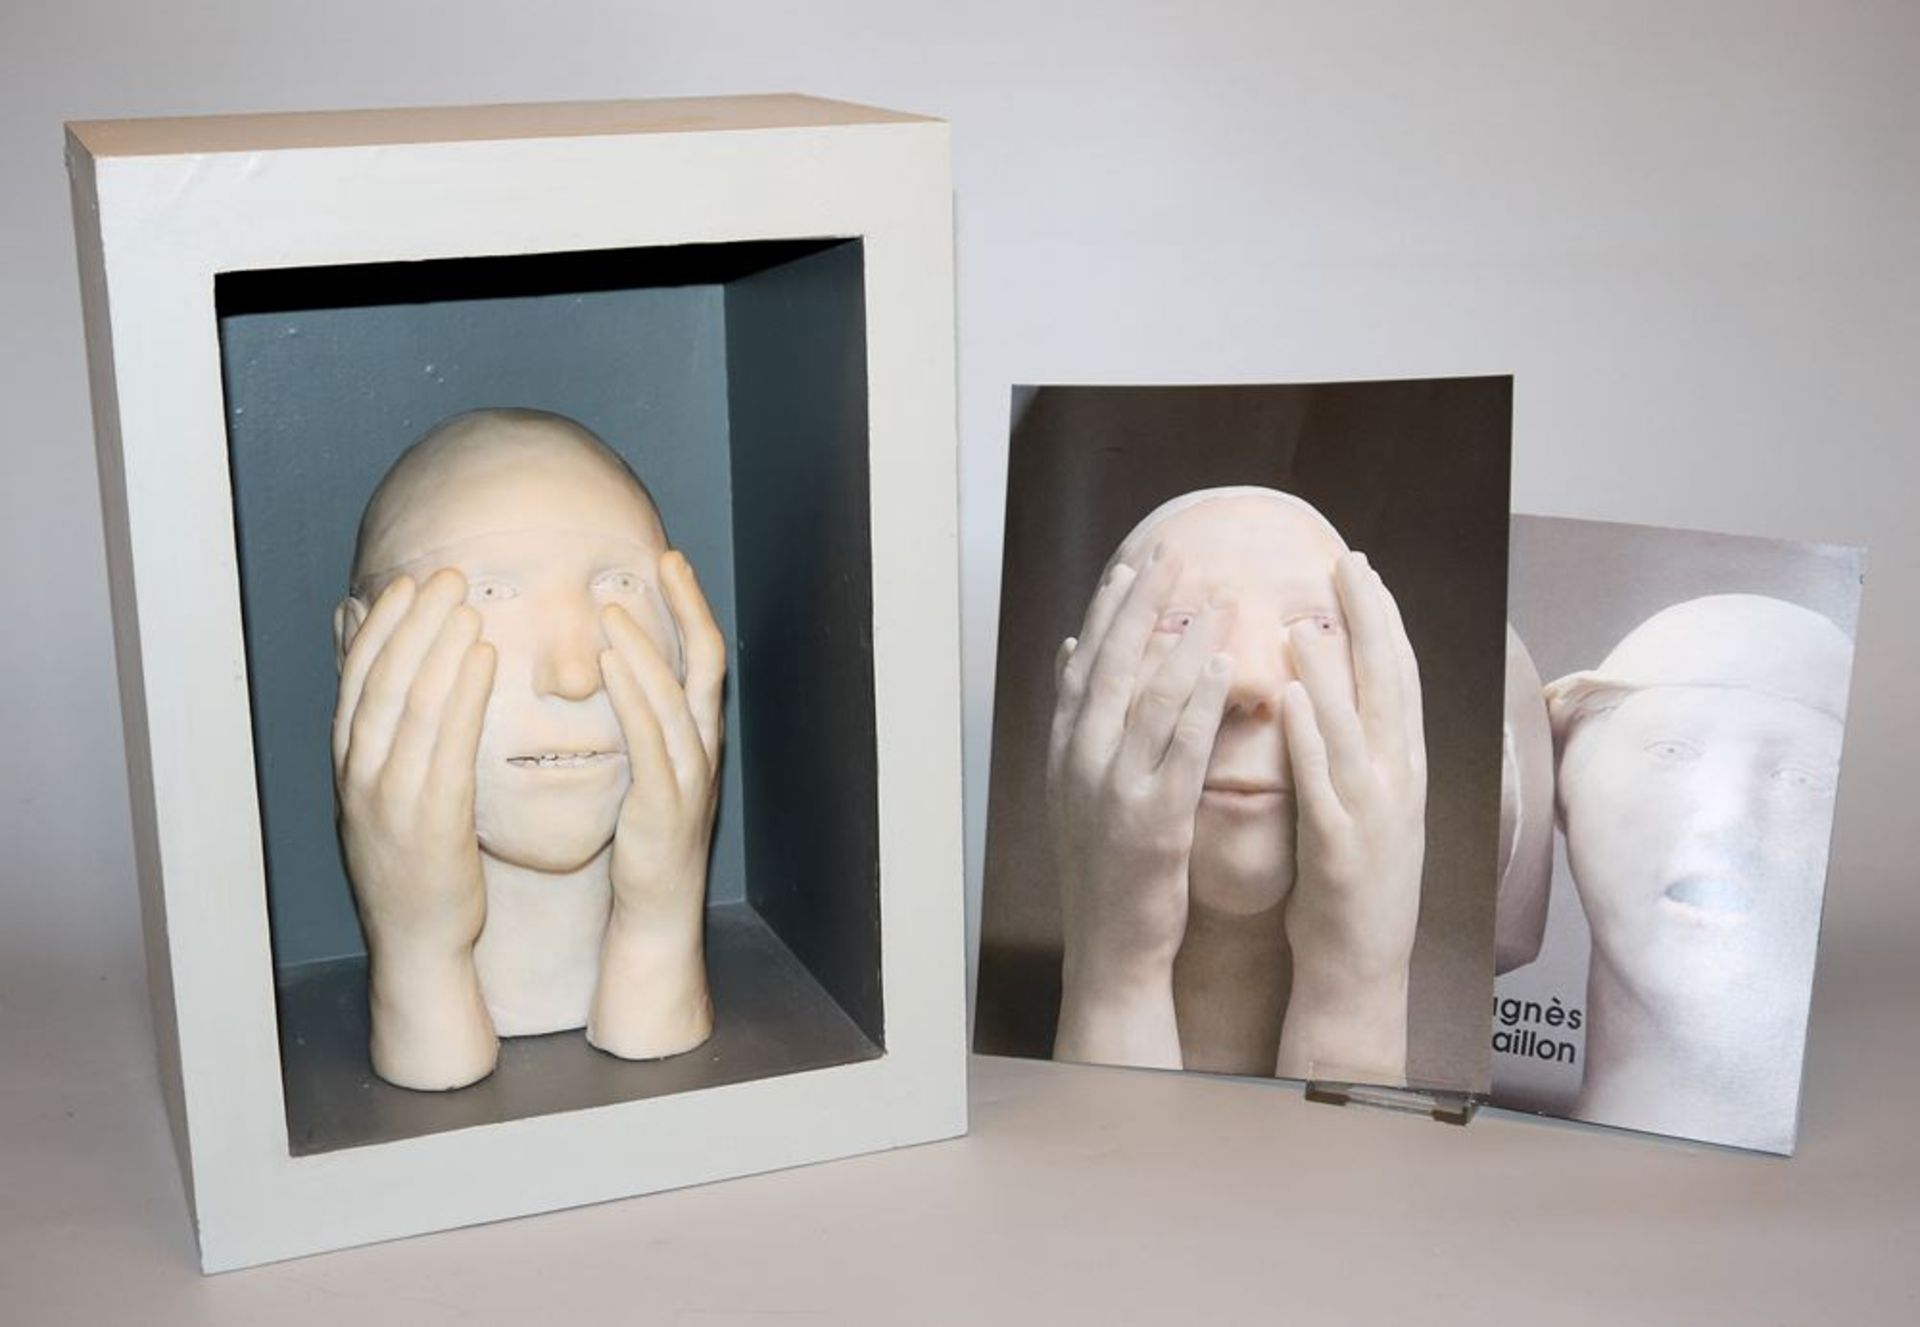 Agnès Baillon, "Les mains sur les yeux", sculpture from 2002, with monographic catalogue